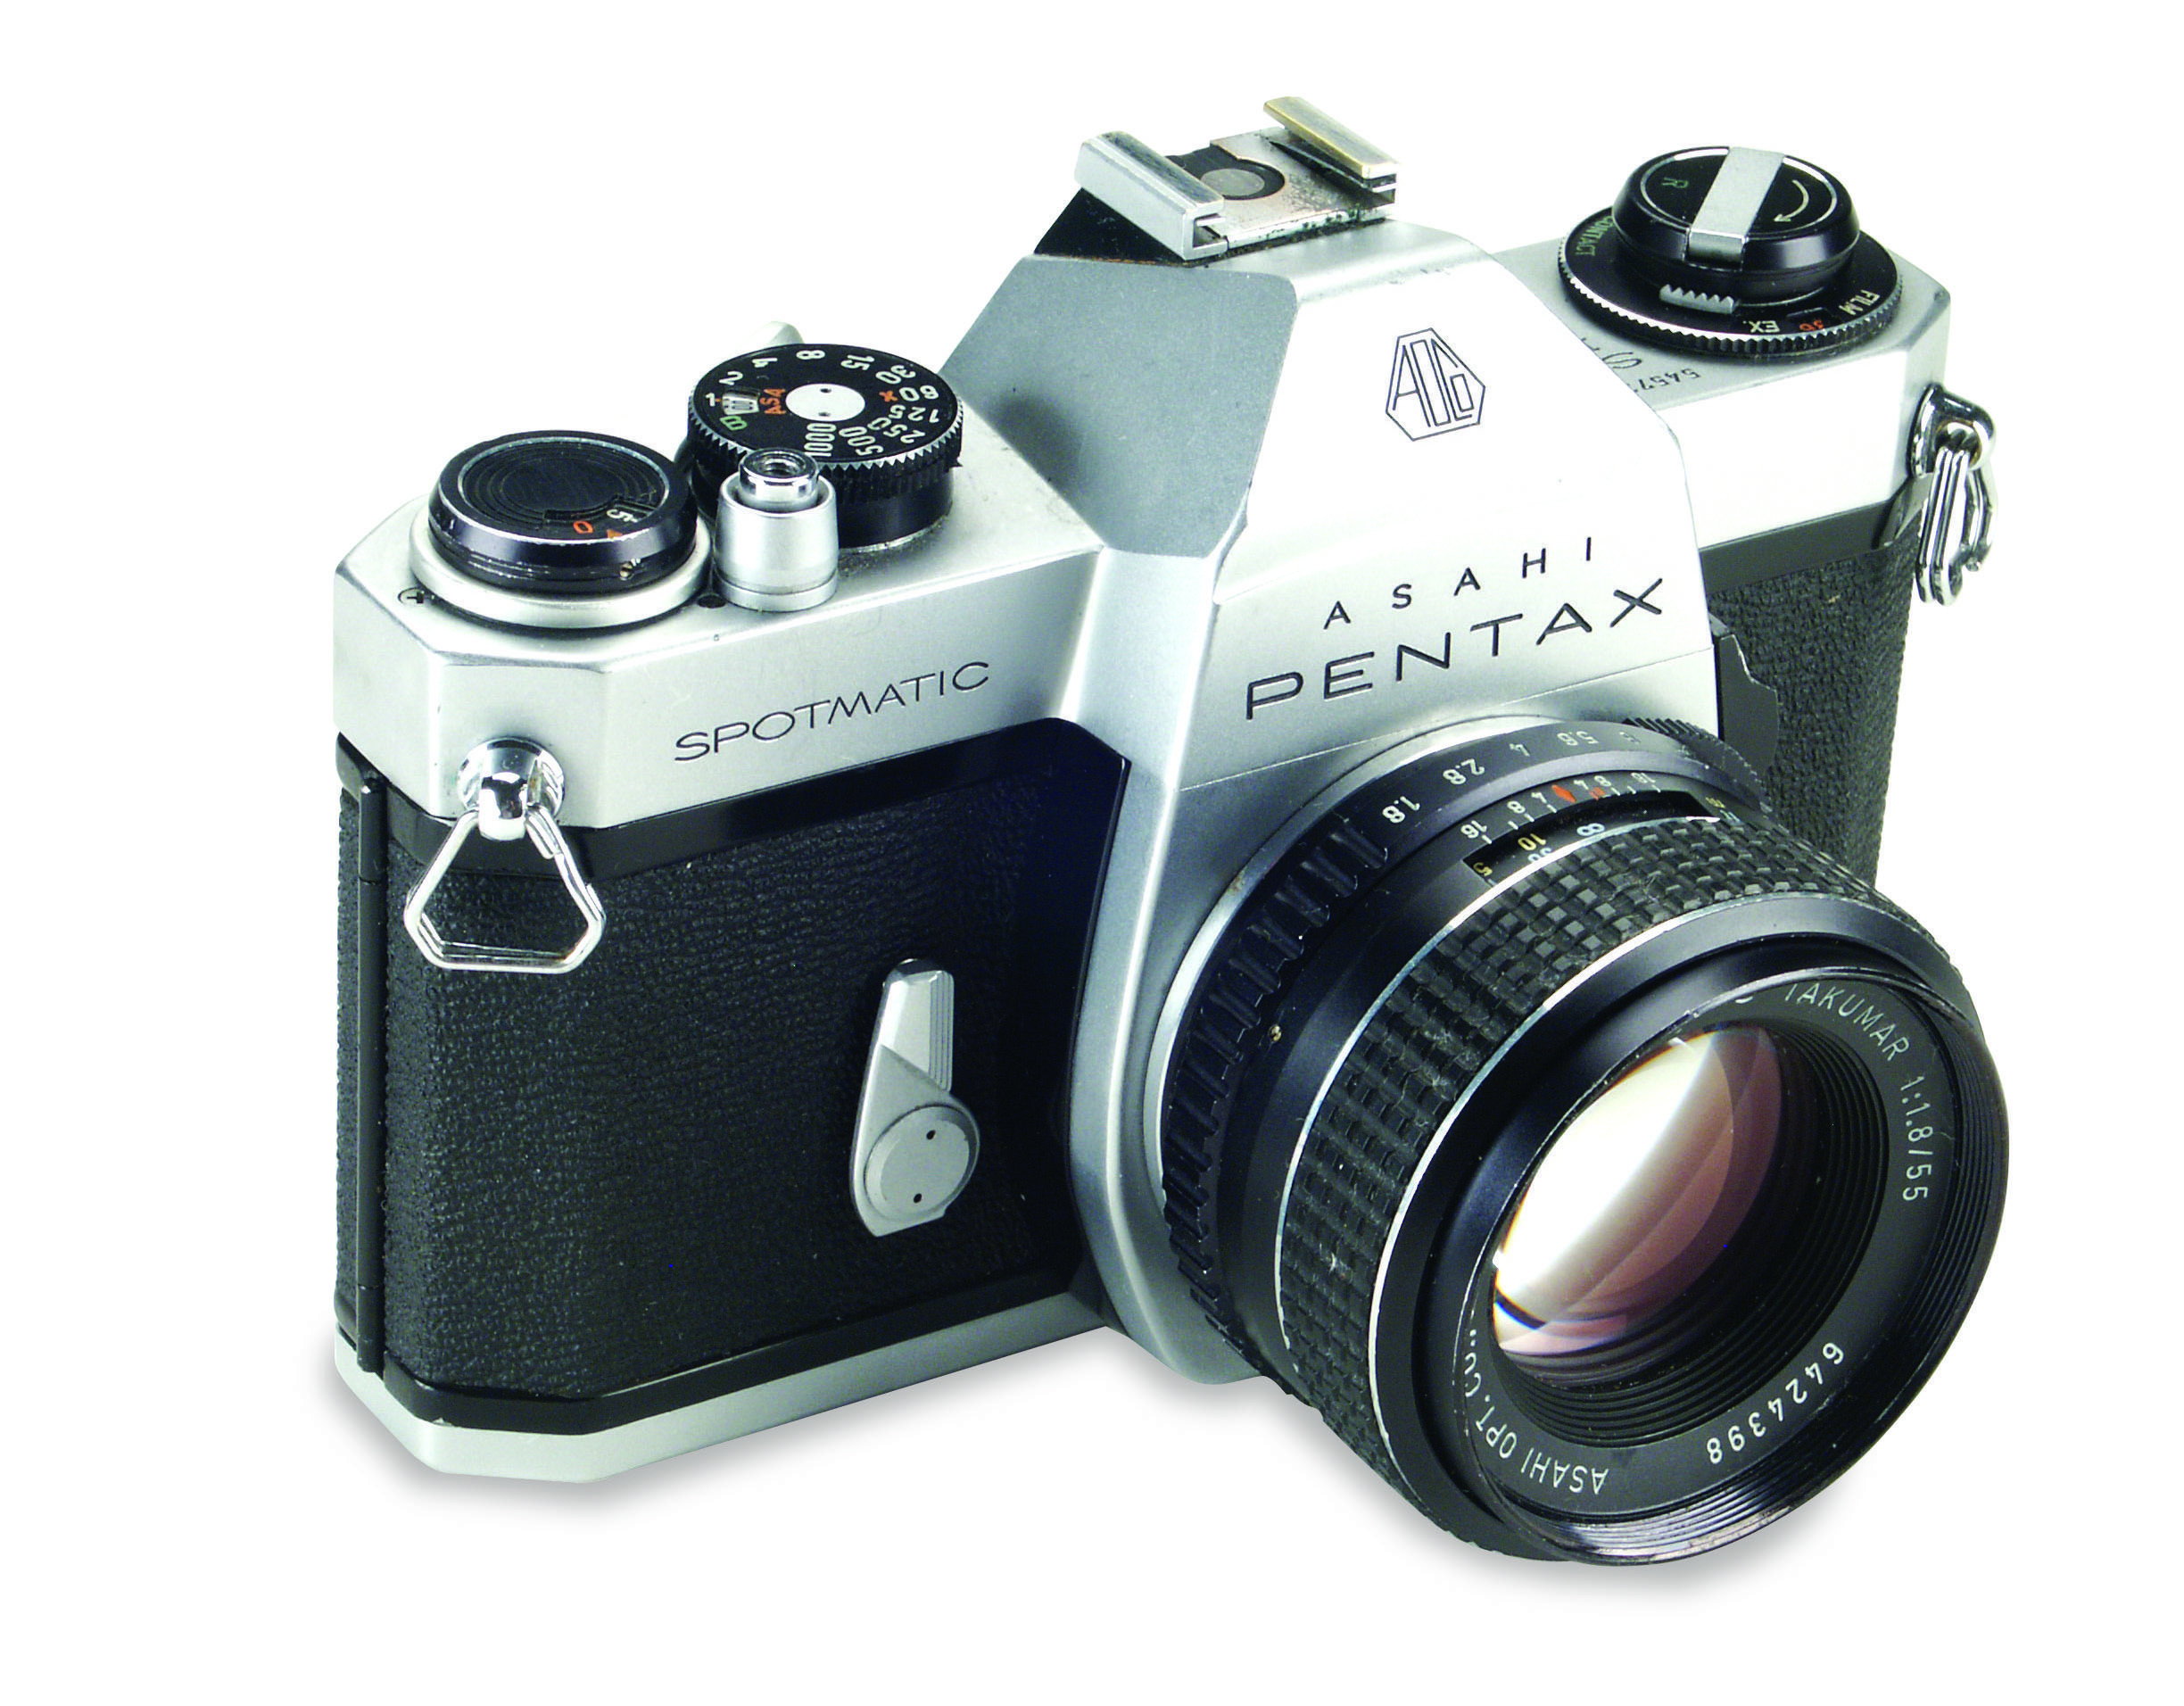 A Pentax Spotmatic, de 1964, foi inovadora por oferecer o sistema de medição de luz TTL (através da lente) e influenciou o lançamento da médio formato Pentax 6x9 